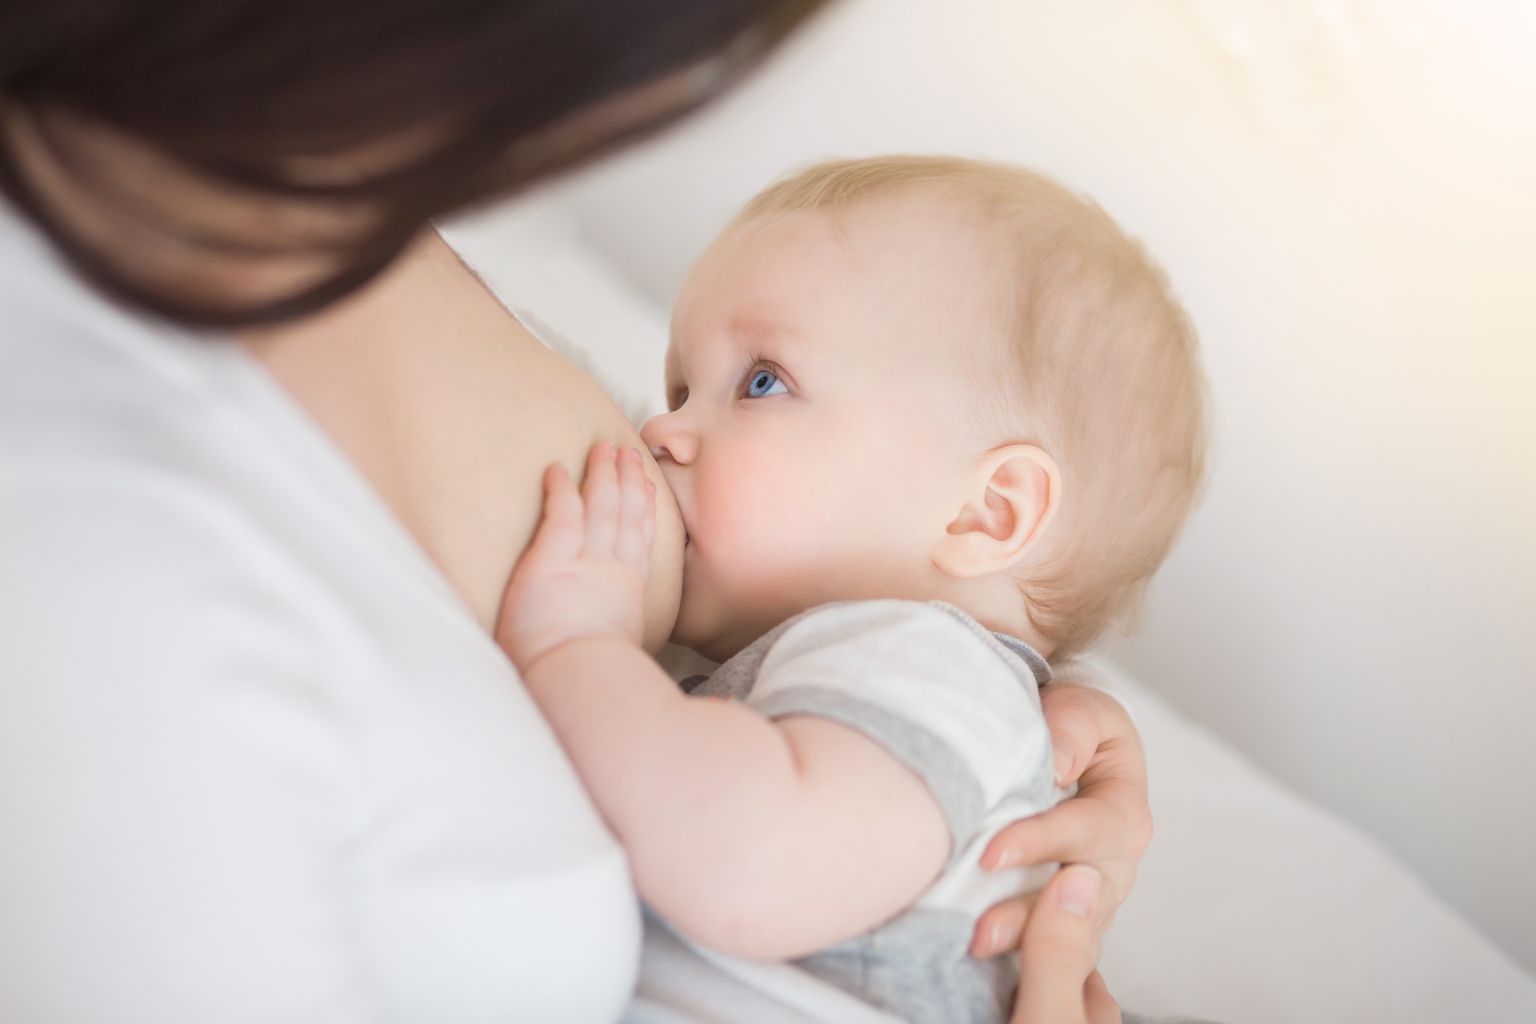 Vaktsineeritud ema võib läbi rinnapiima jagada antikehasid ka beebile.